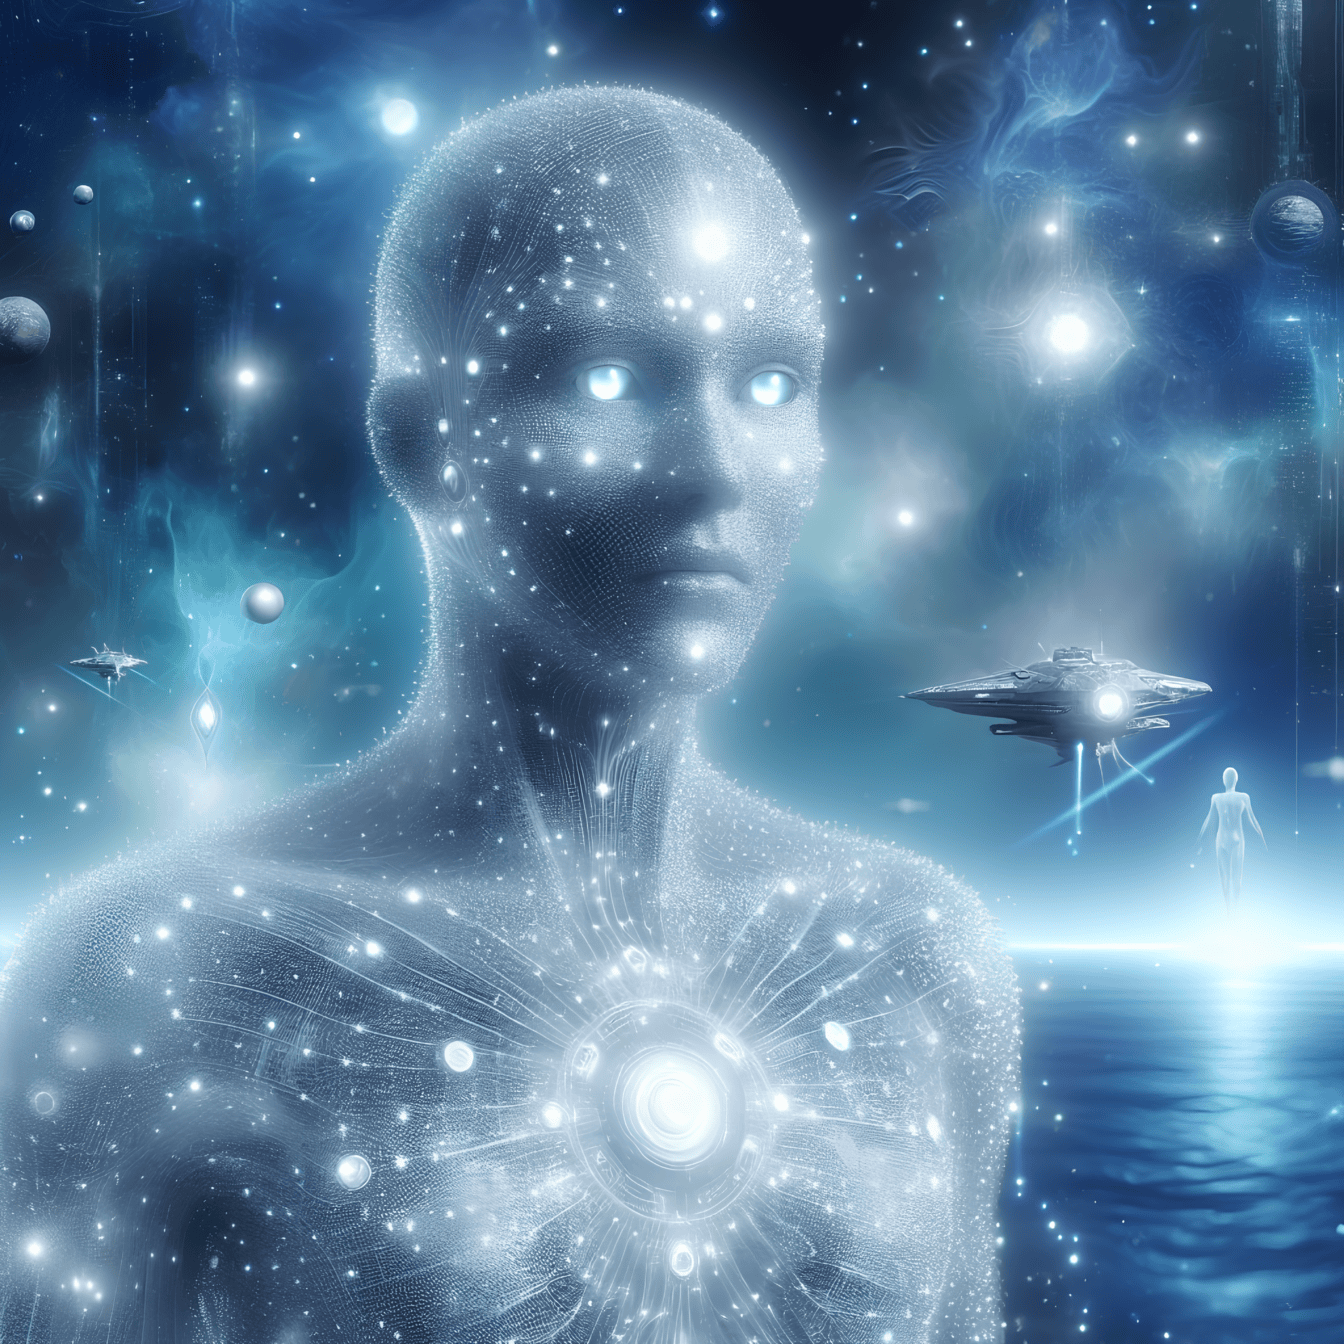 Eine surreale außerirdische Lebensform, ein spiritueller humanoider Außerirdischer mit leuchtend blauen Augen